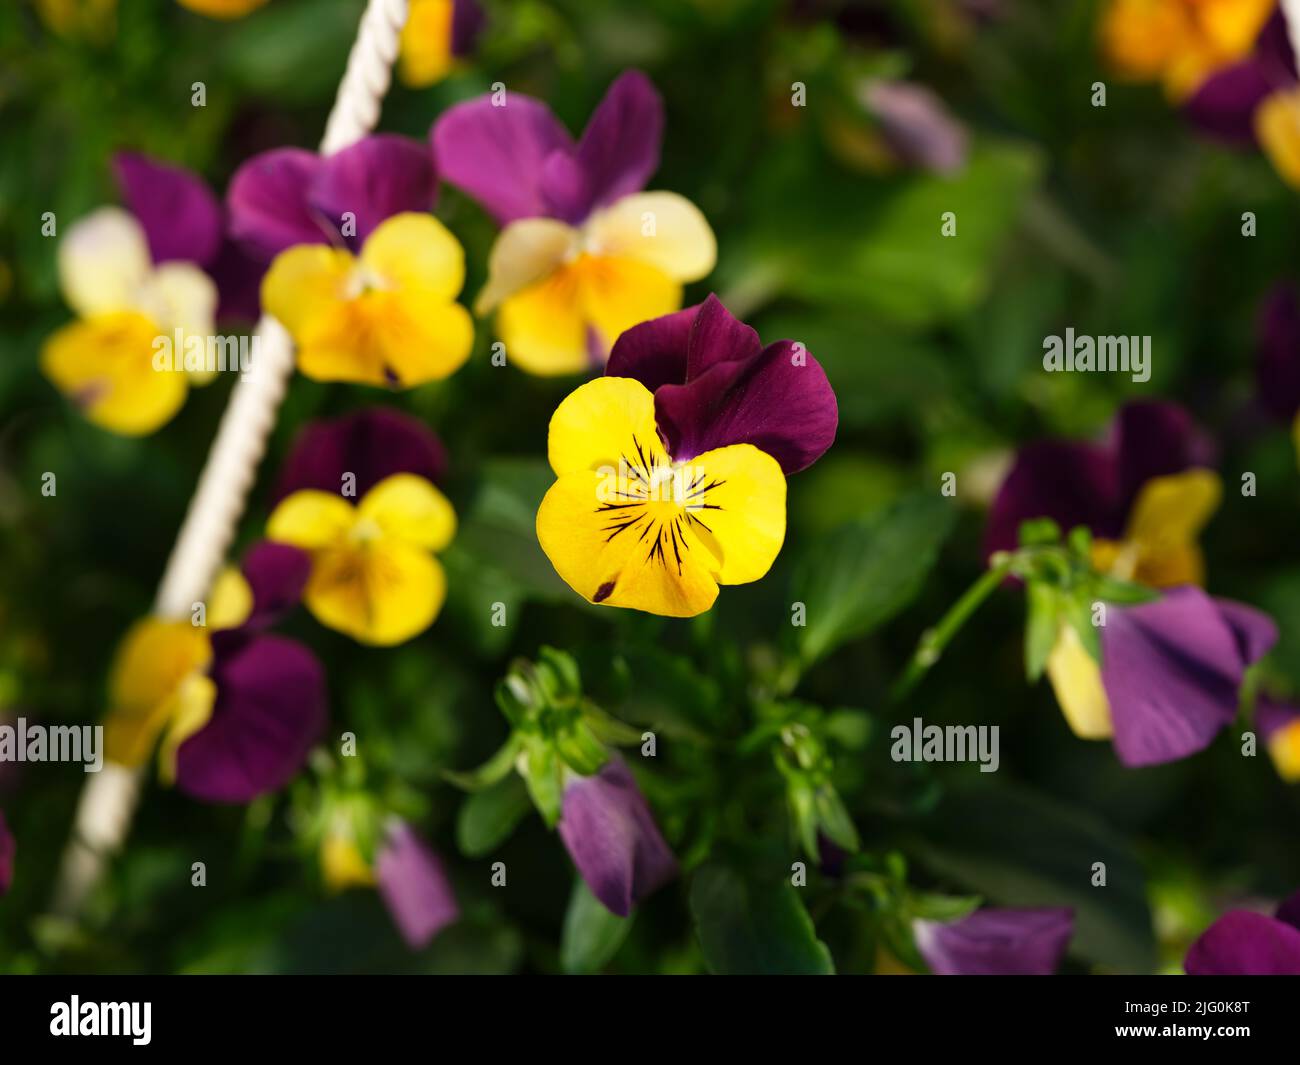 Pansies amarillos y violetas floreciendo en un jardín Foto de stock